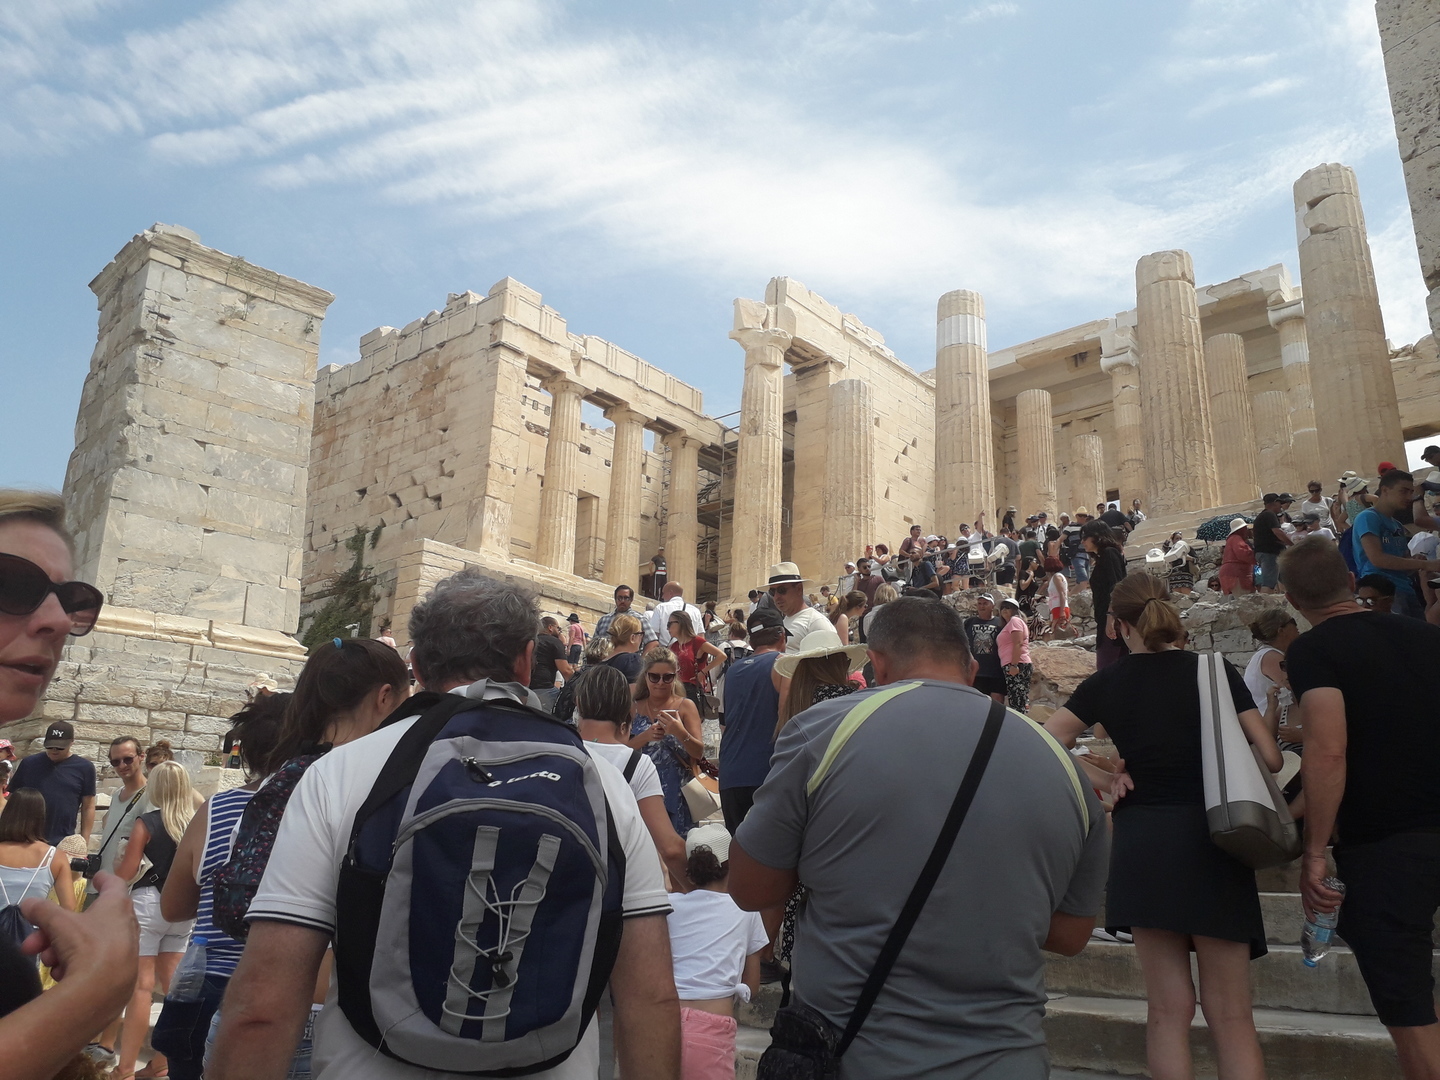 Sommet de l'Acropole avec foule sur les marches finales